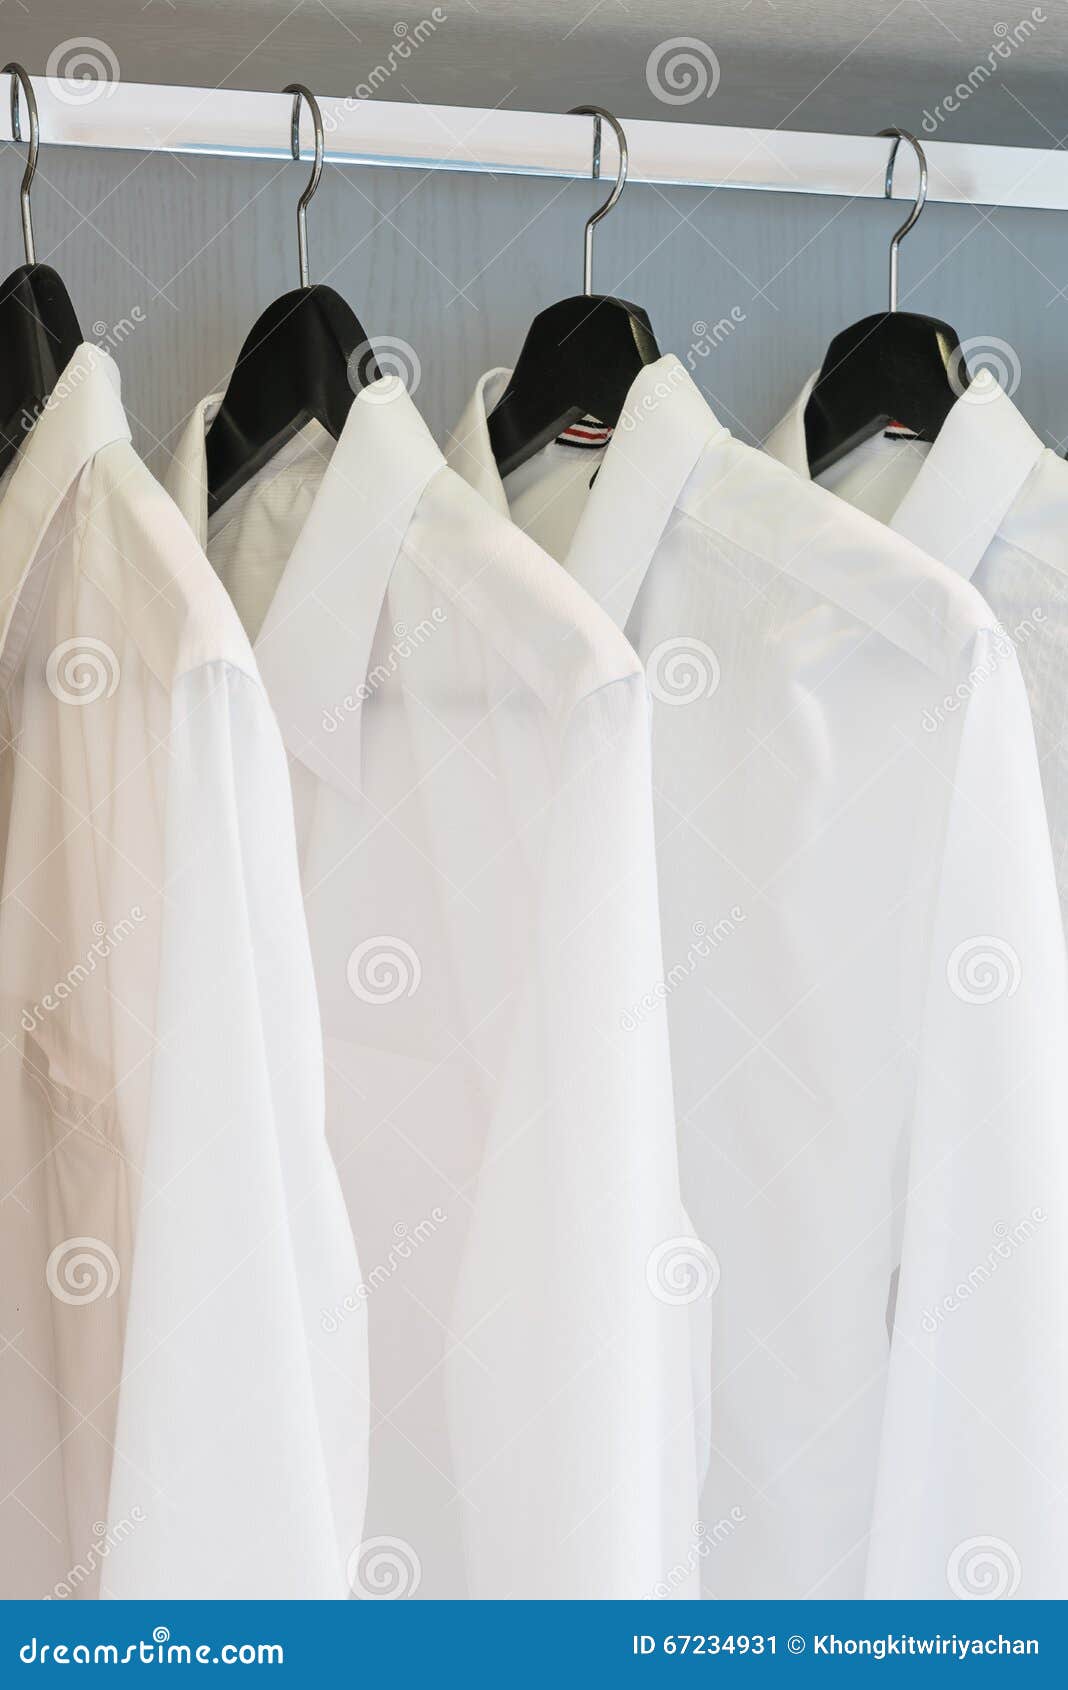 White Shirts Hanging on Rail Stock Image - Image of unisex, textile ...